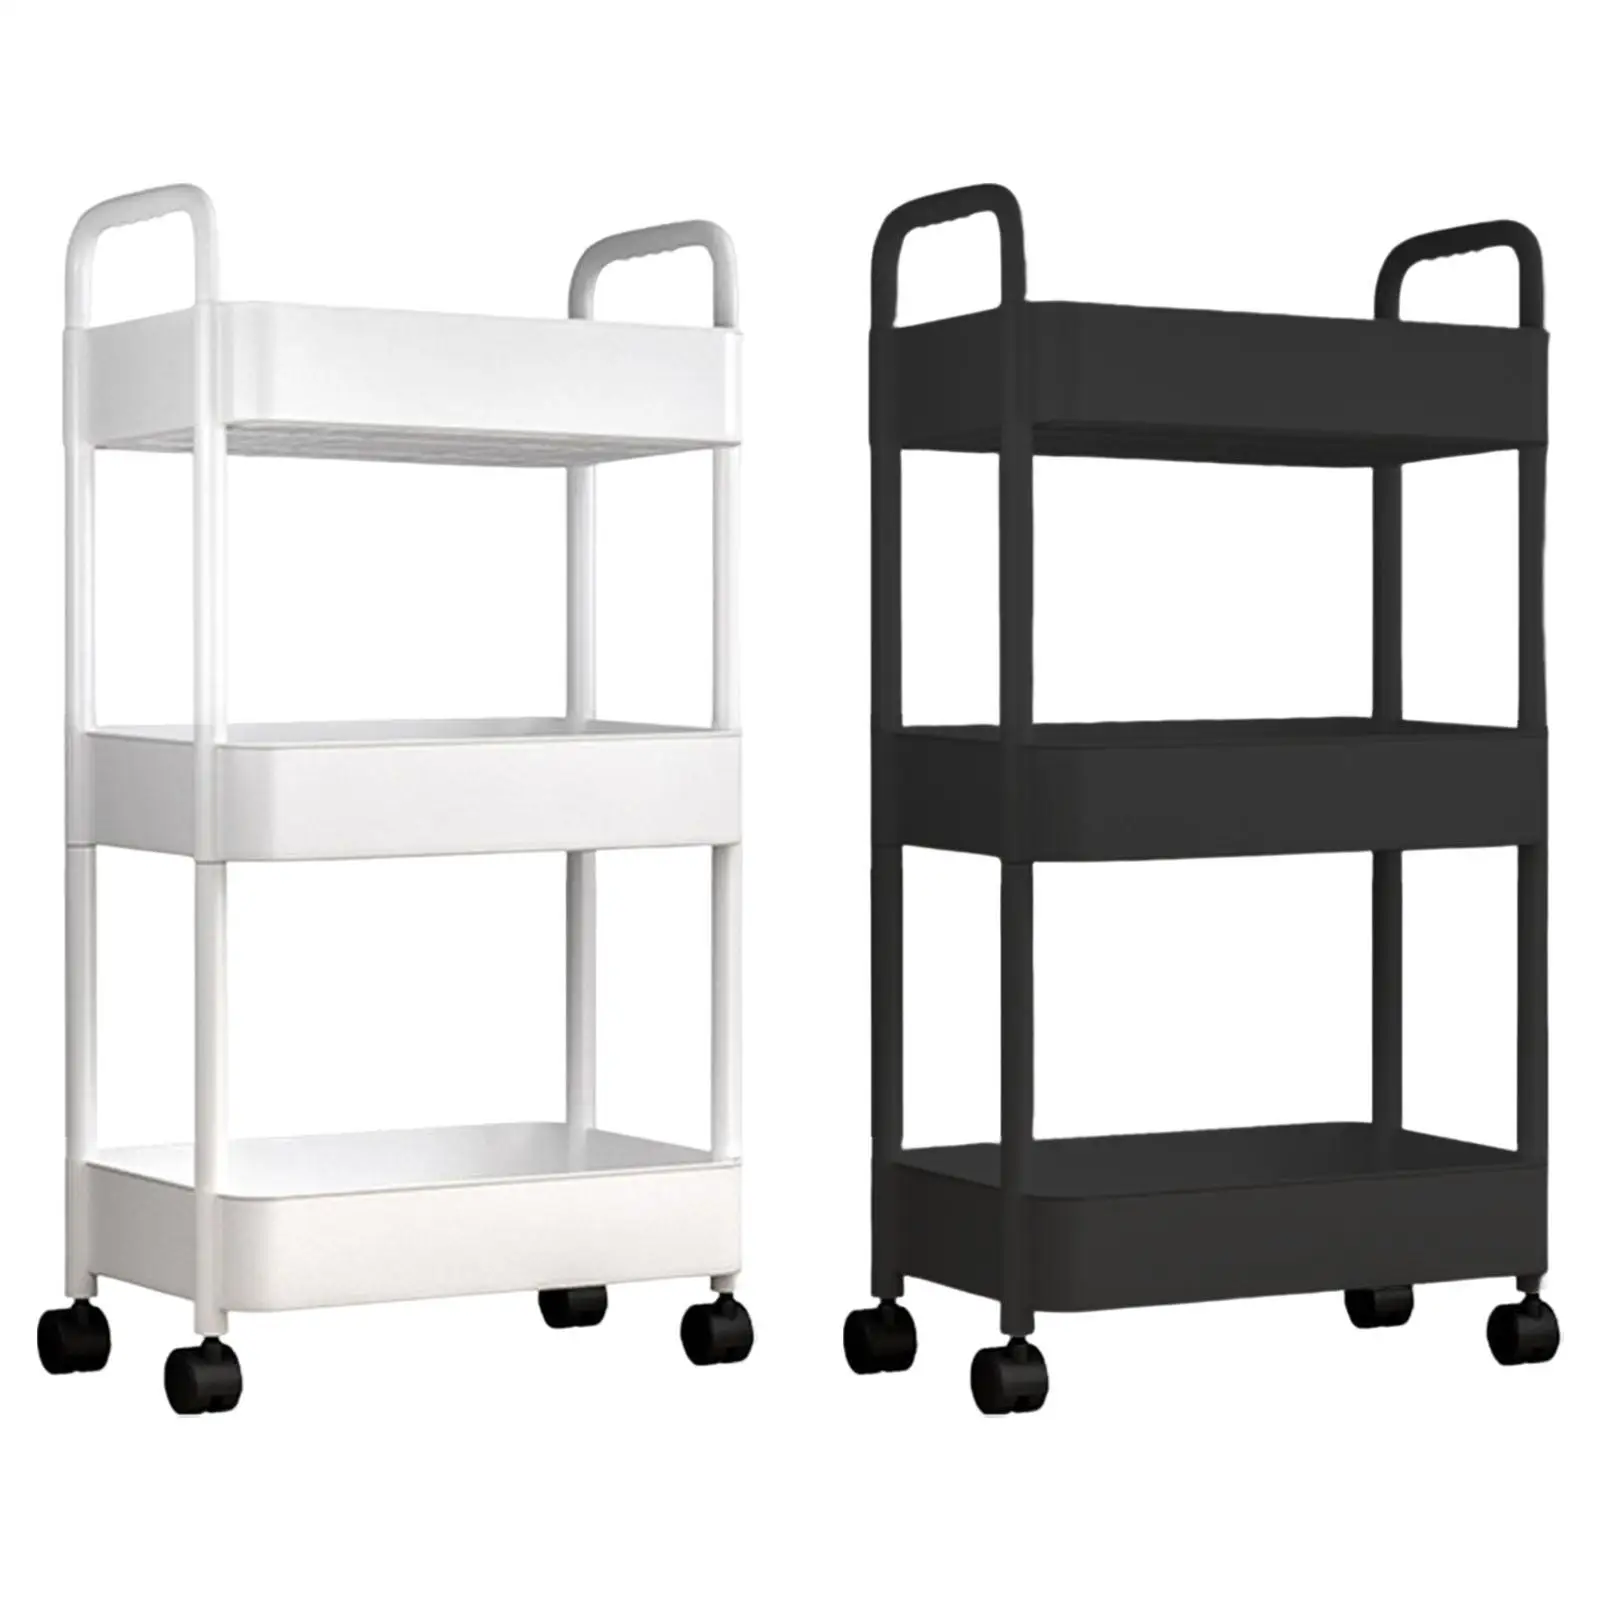 3 Tier Mobile Utility Cart for Utensils Storage Shelves Standing Corner Shelves